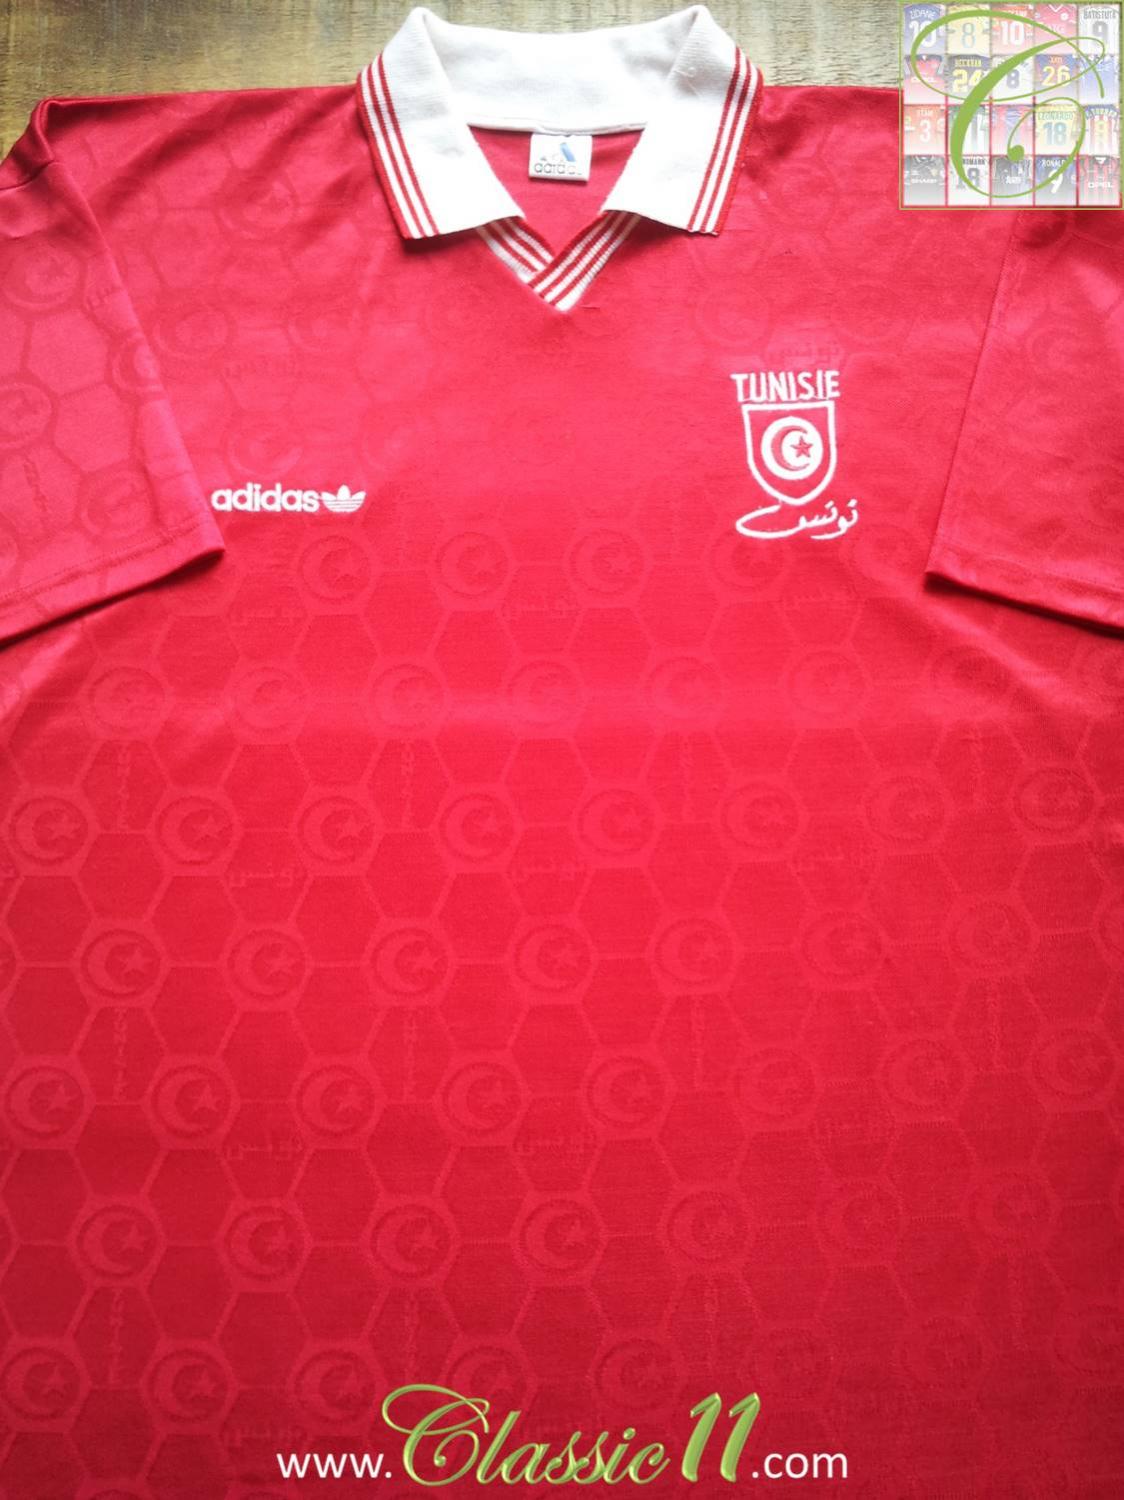 maillot de tunisie exterieur 1992-1994 rétro